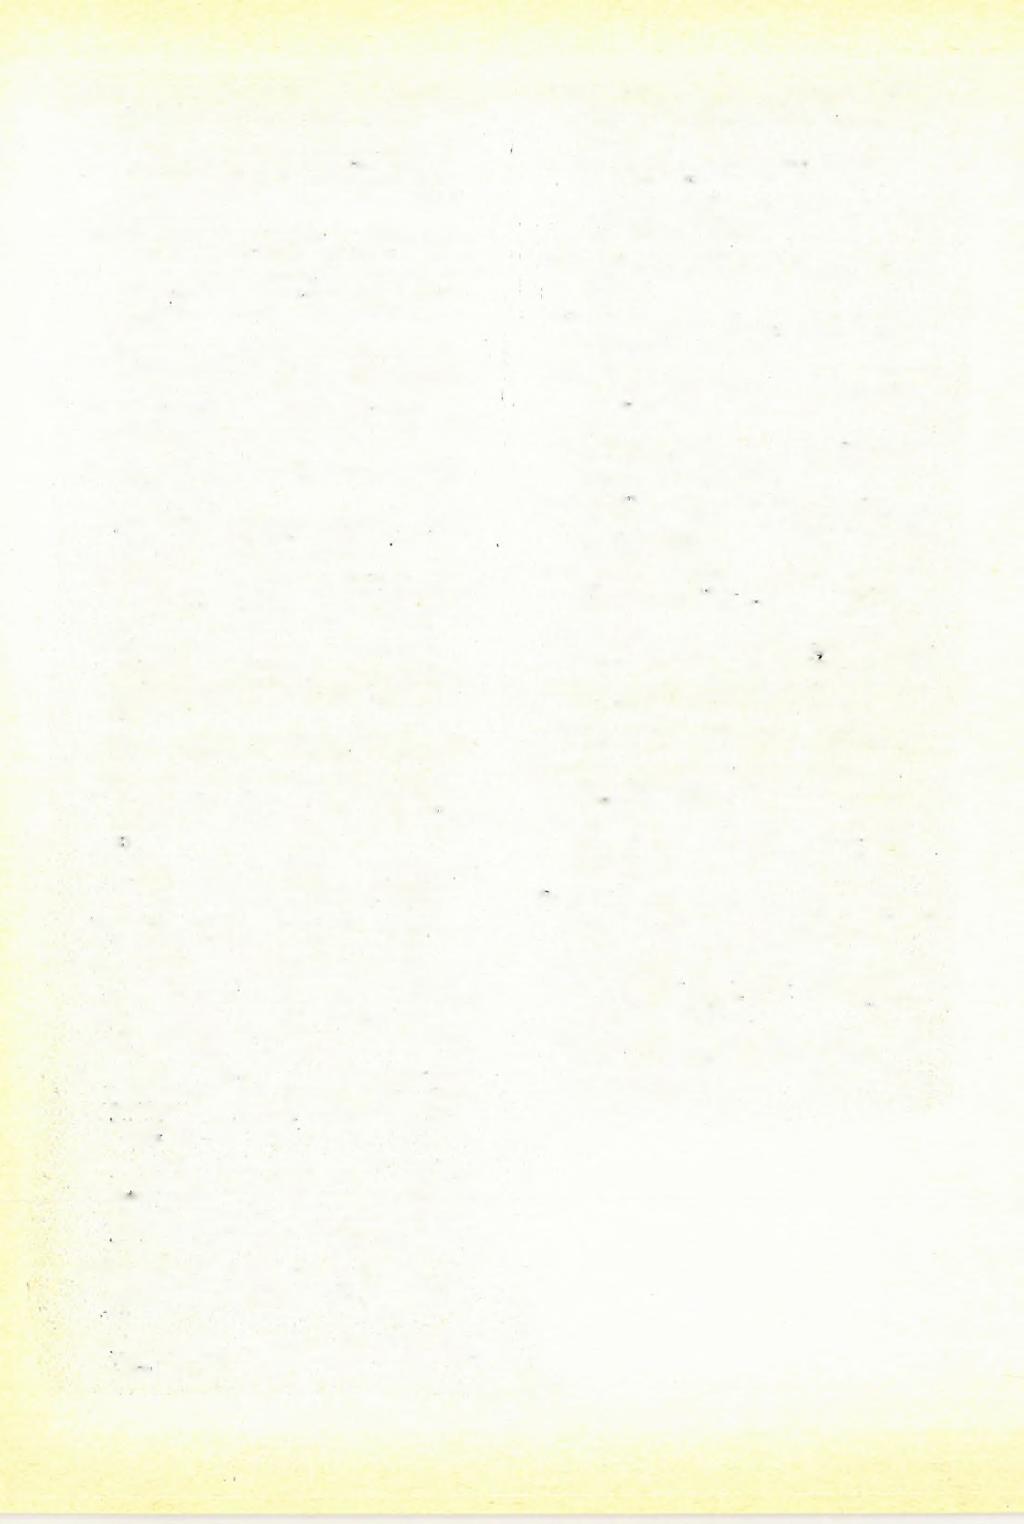 Ránor, Kónya, Pleszkáts /1977/s Földtani alapszelvények geofizikai vizsgálata 1976. évi jelentés ELGI p.24. Ráner /1982/: Földtani alapszelvények geofizikai vizsgálata.